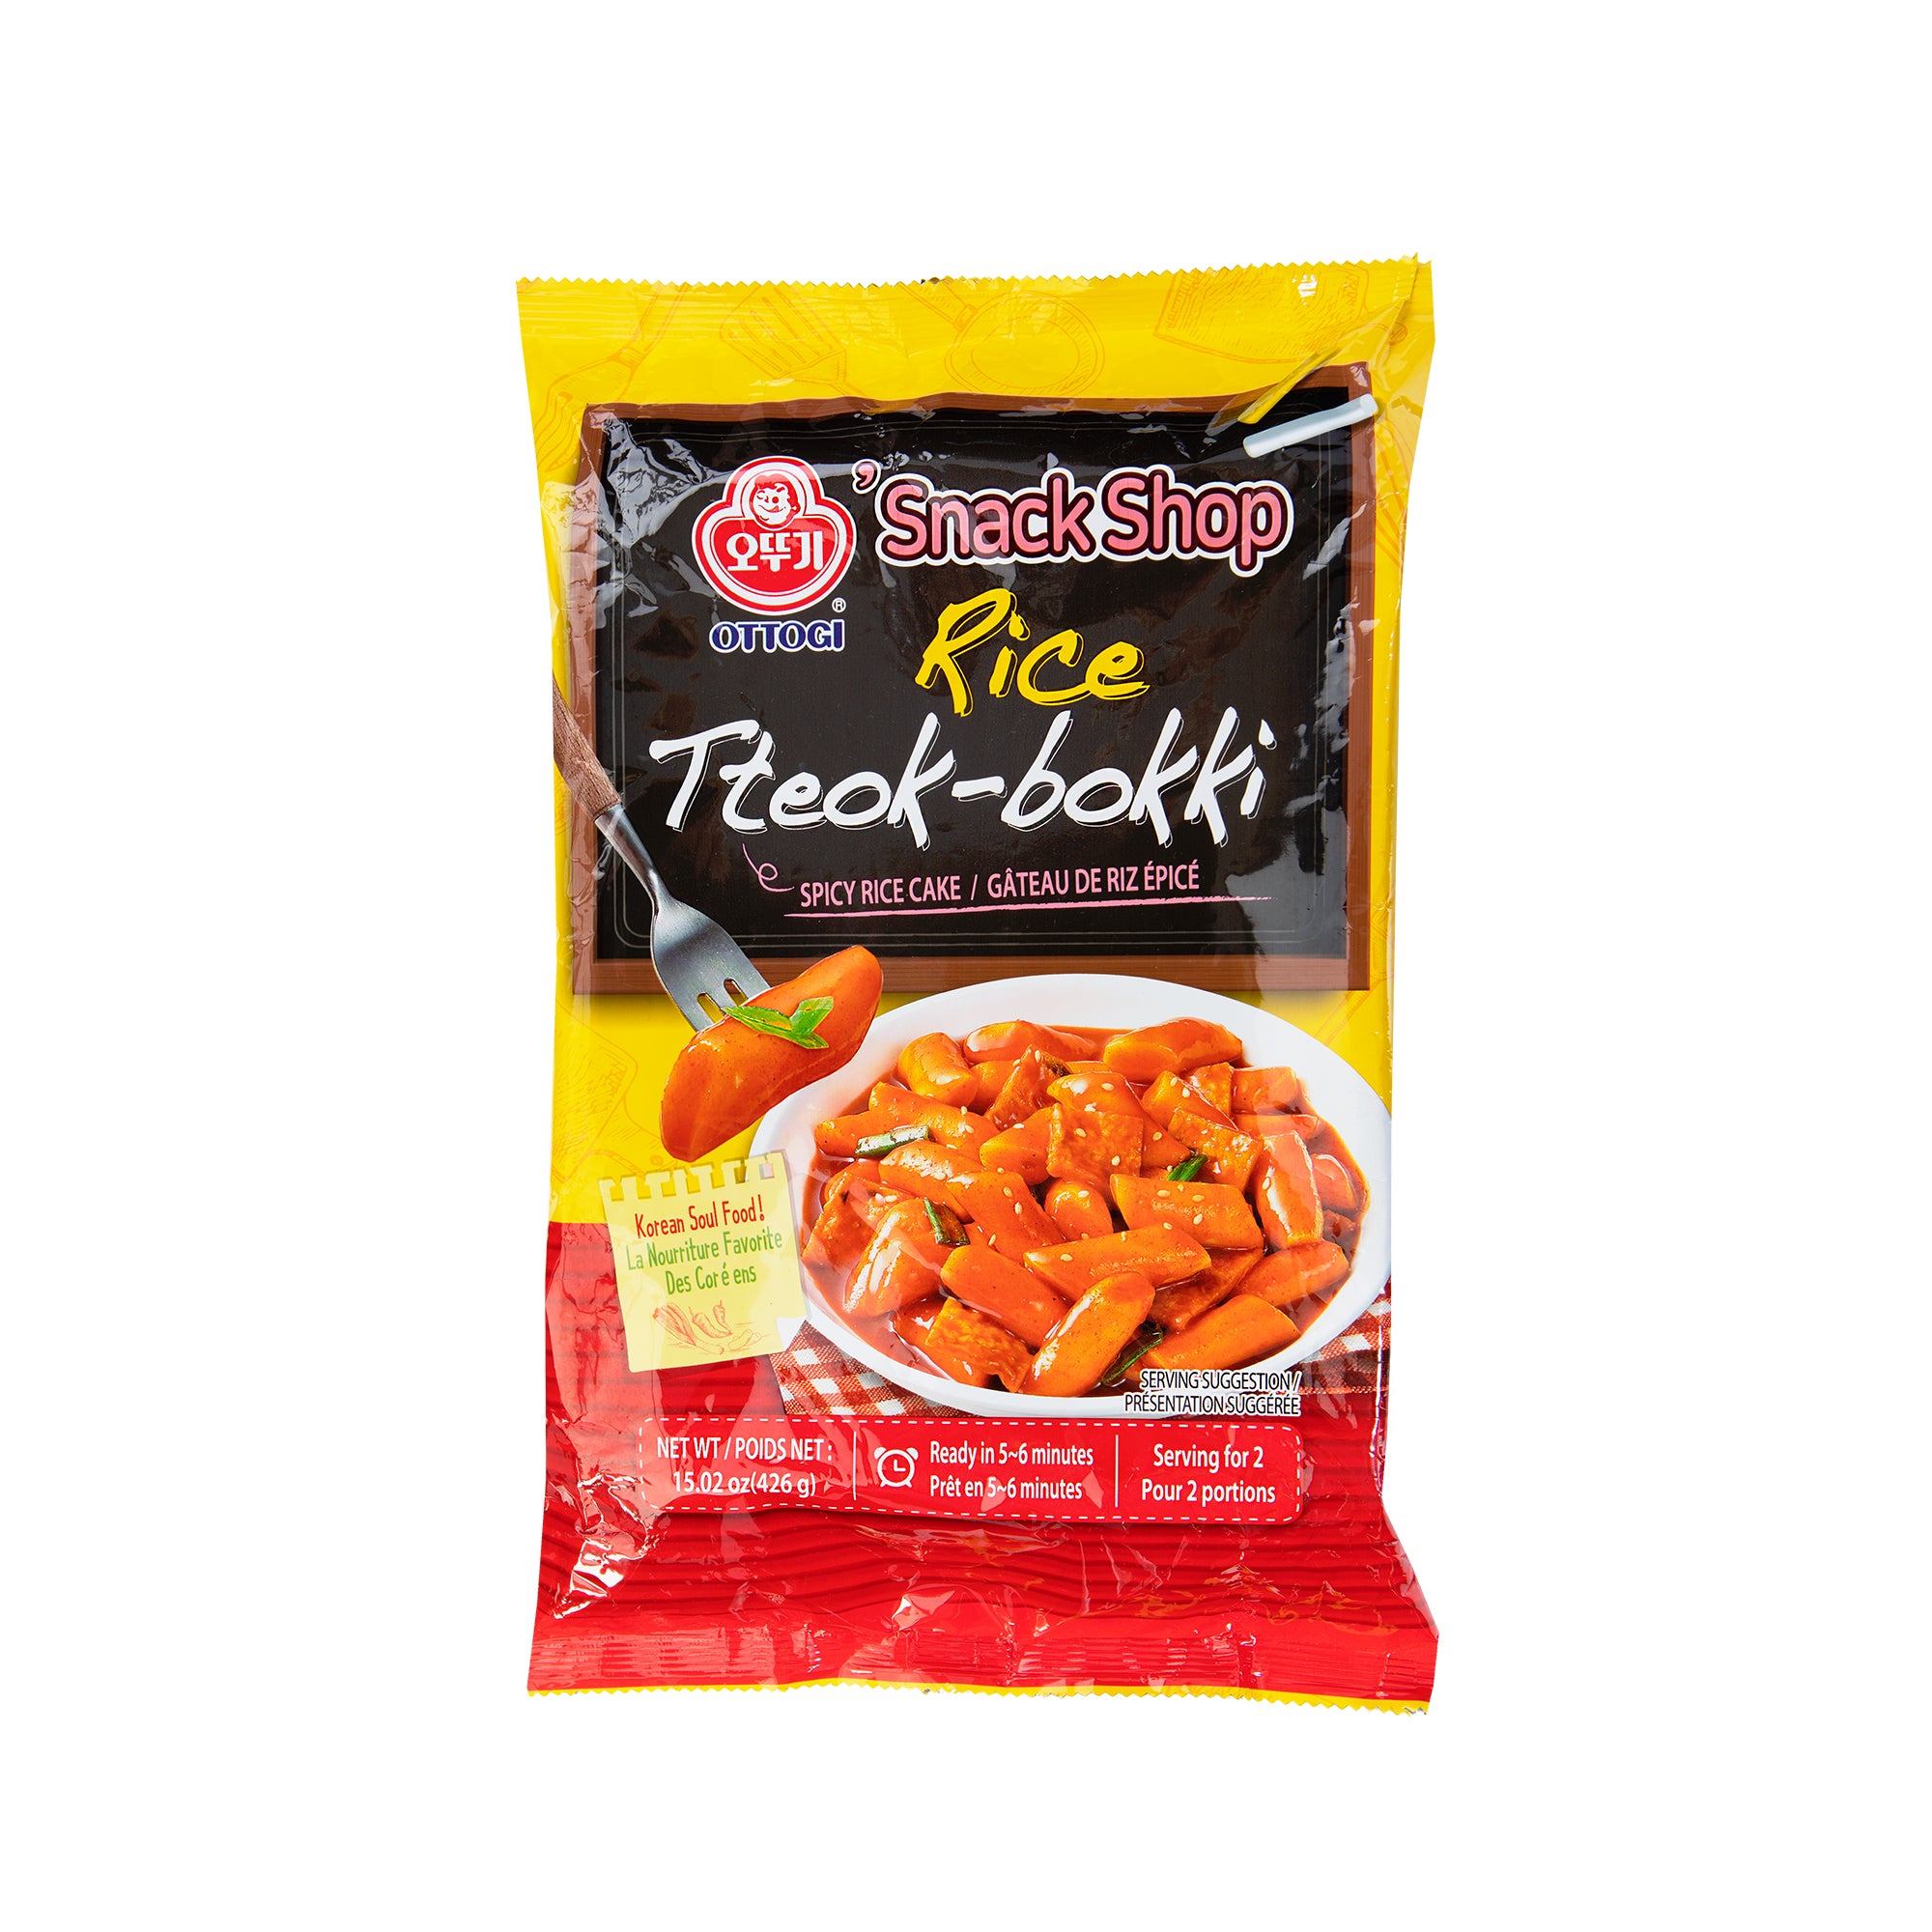 Tteok-bokki (Spicy Rice Cake) 3-Flavor Set